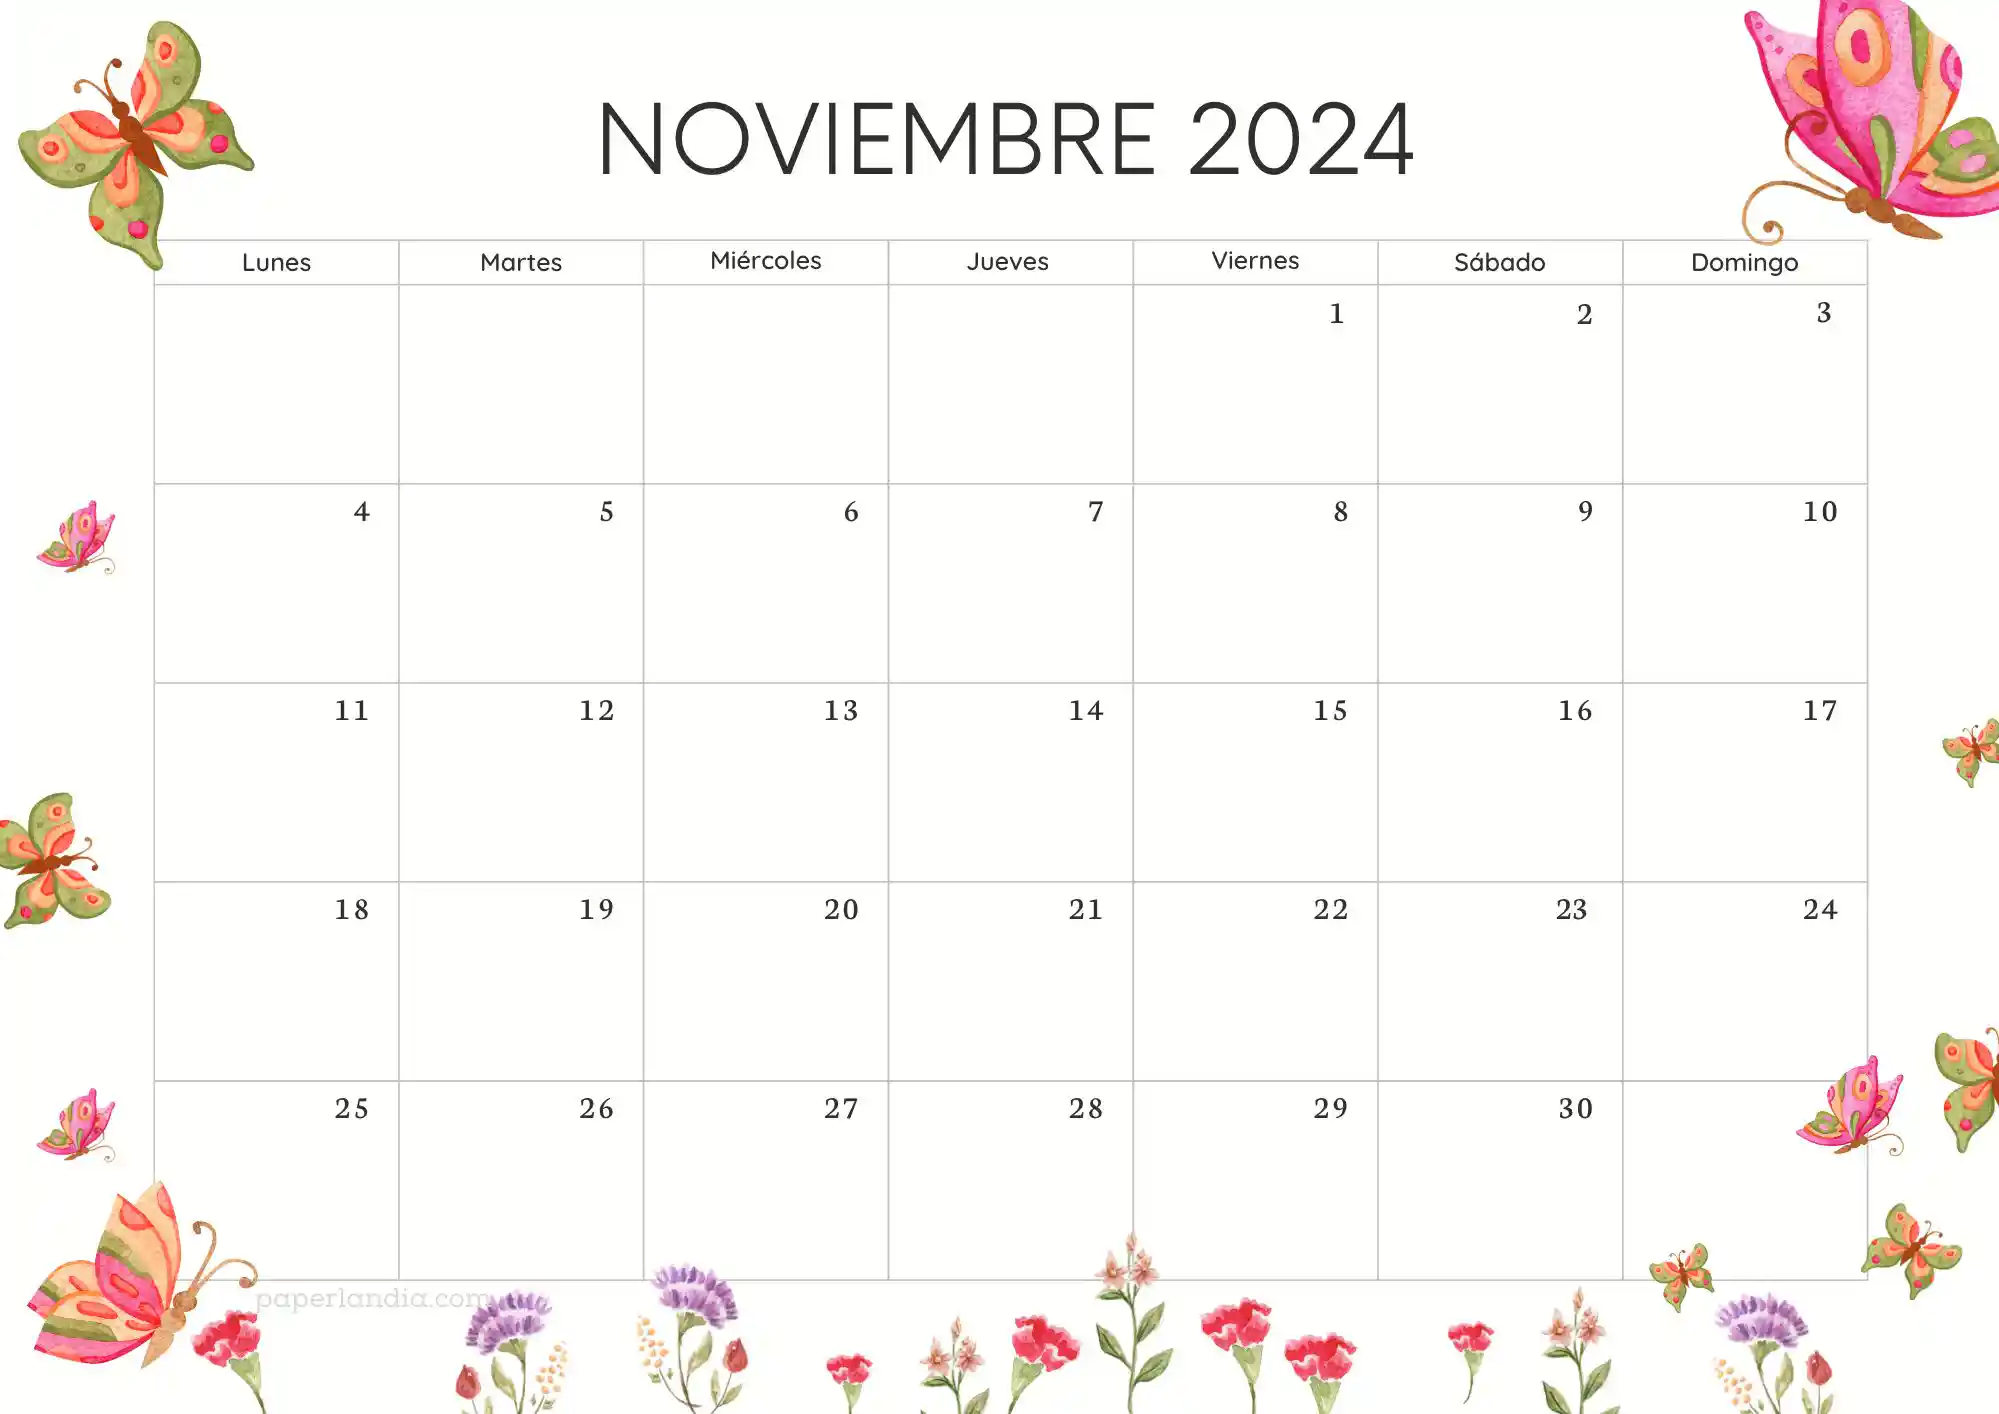 Calendario noviembre 2024 horizontal con mariposas